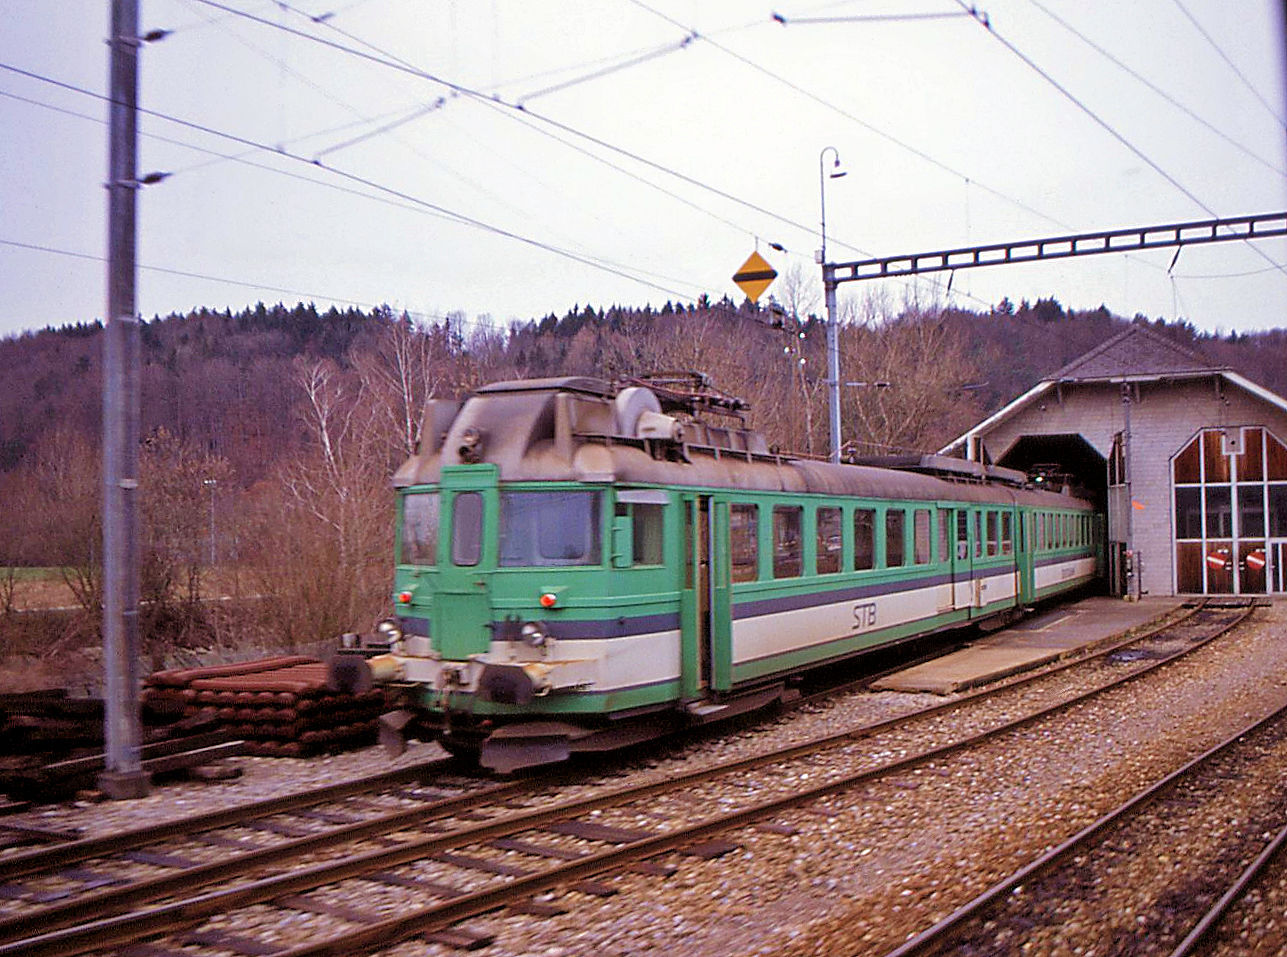 Sensetalbahn 103, der einstige ABDZe4/6 736 von 1938 vor dem Depot Laupen. Man beachte die abgerundeten Fensterecken, im Gegensatz zur Originalform. 1985 gelangten die drei ABDZe4/6 der BLS-Gruppe zur Sensetalbahn. 4.Januar 1991